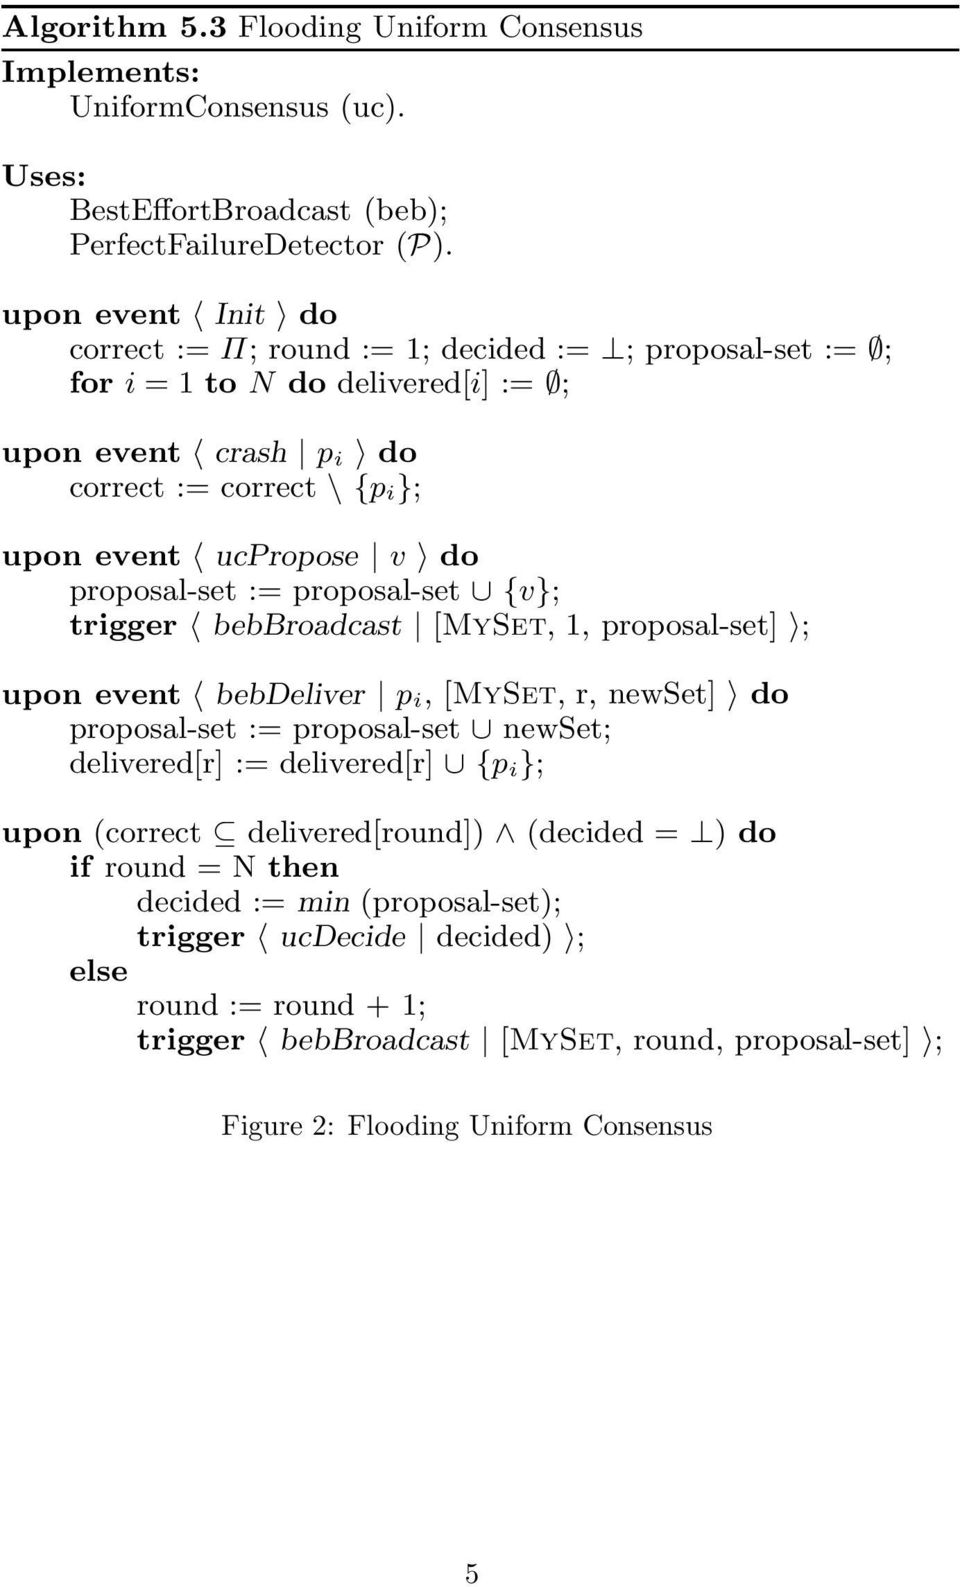 proposal-set := proposal-set {v}; trigger bebbroadcast [MySet, 1, proposal-set] ; upon event bebdeliver p i,[myset, r, newset] do proposal-set := proposal-set newset; delivered[r] := delivered[r] {p